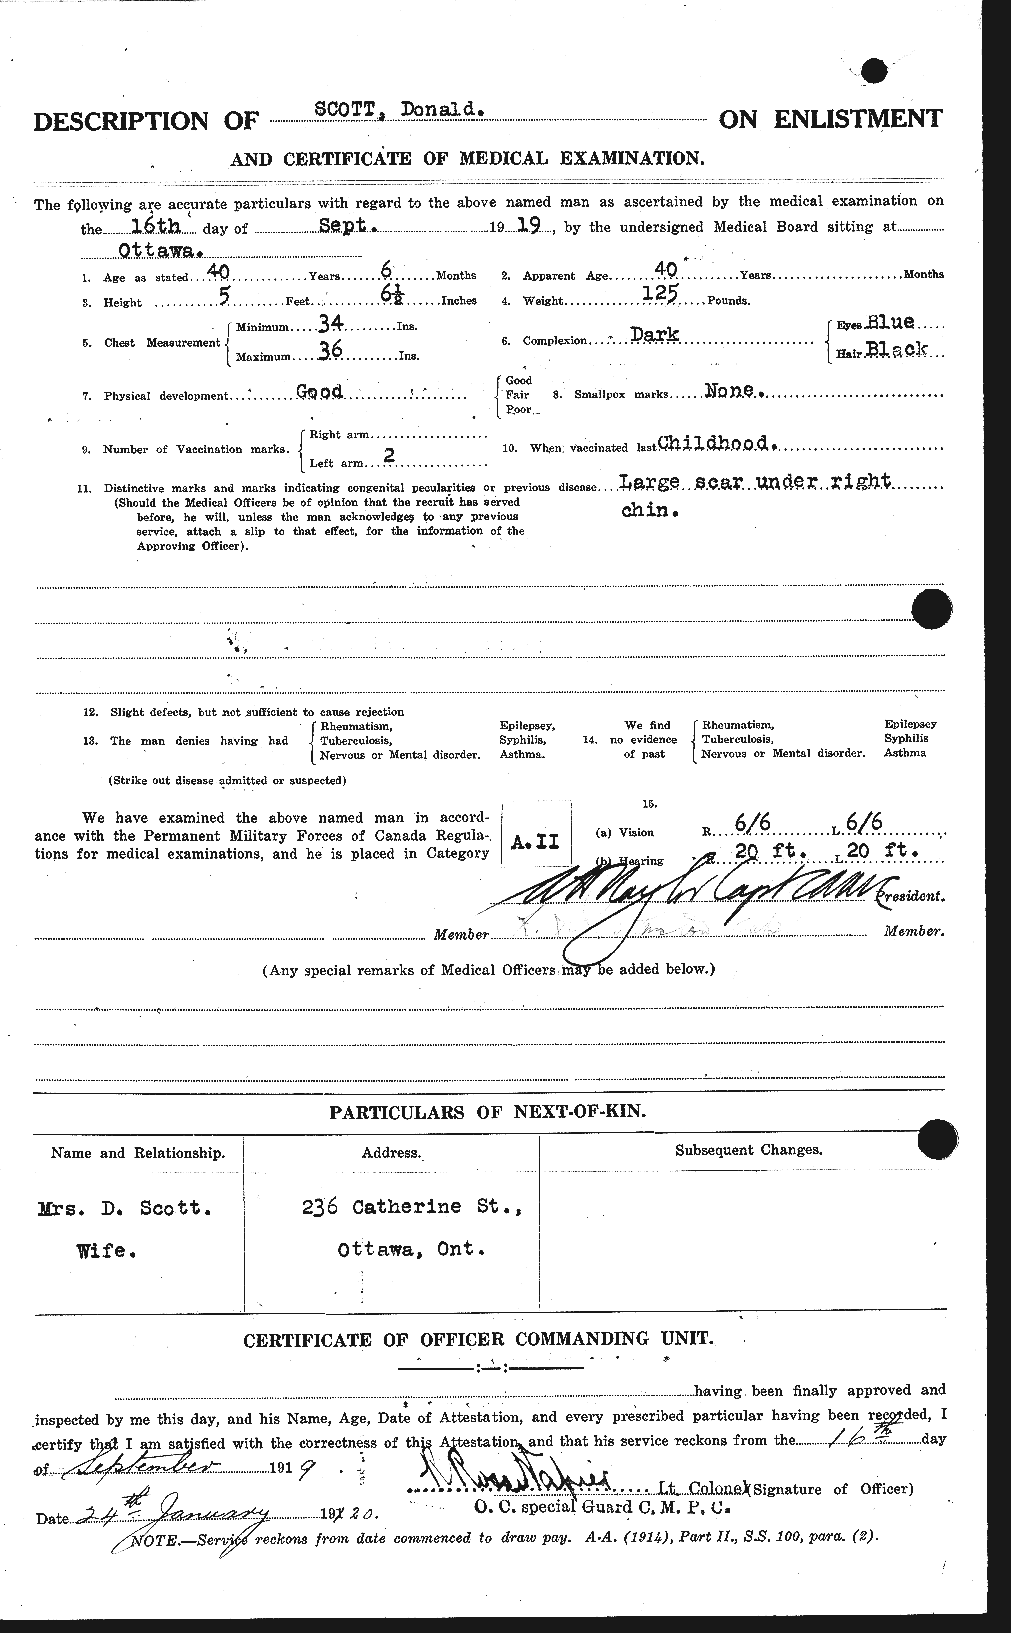 Dossiers du Personnel de la Première Guerre mondiale - CEC 085362b